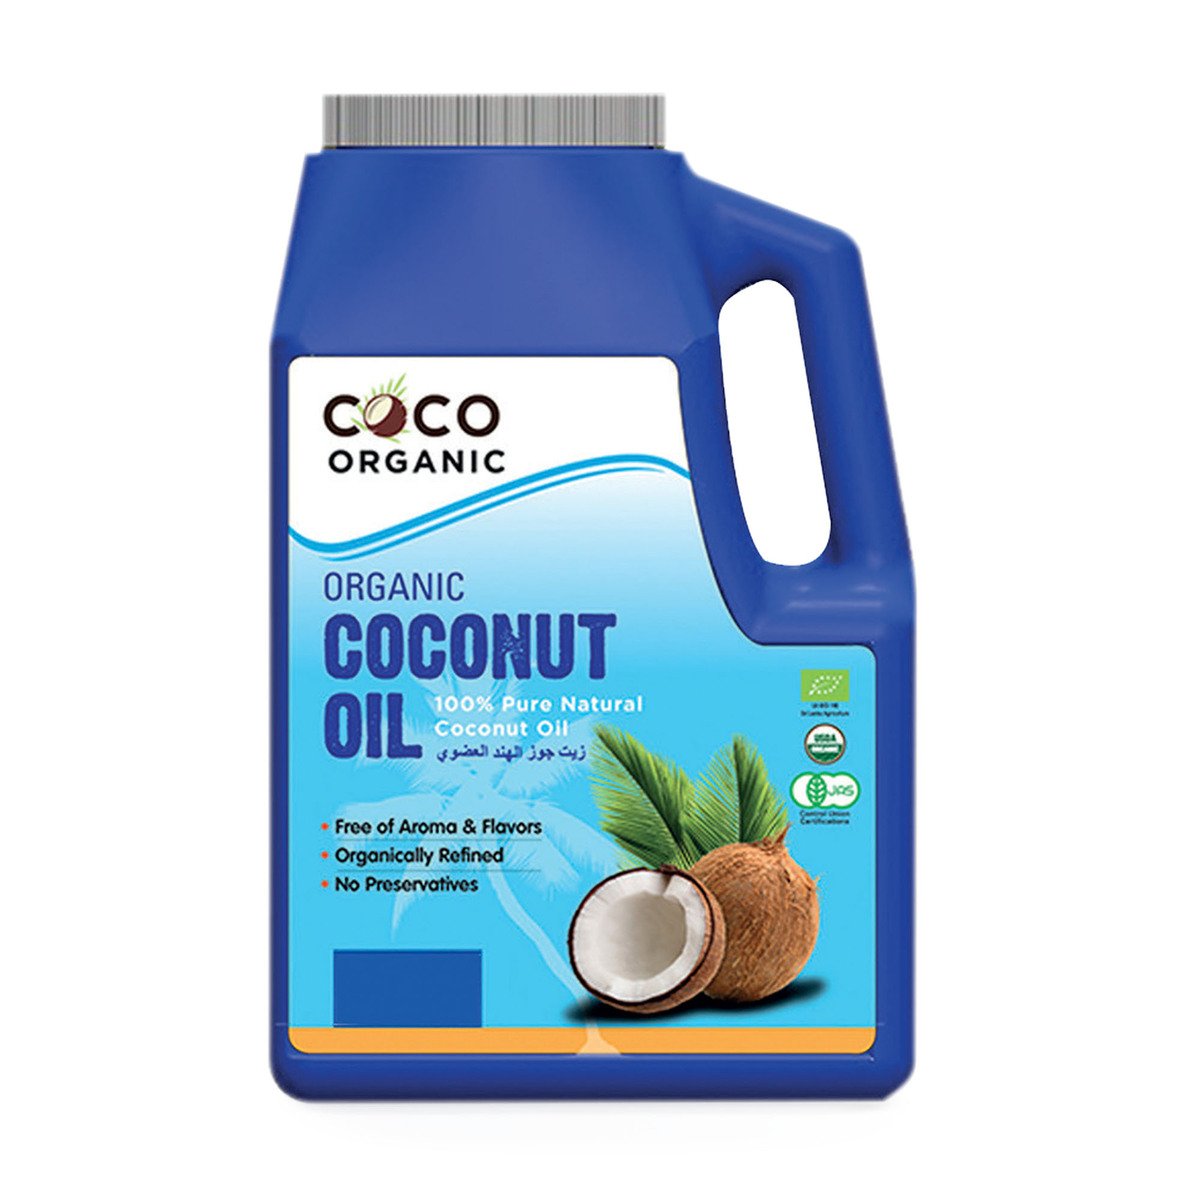 اشتري قم بشراء كوكو زيت جوز الهند العضوي 1 لتر Online at Best Price من الموقع - من لولو هايبر ماركت Coconut Oil في الكويت